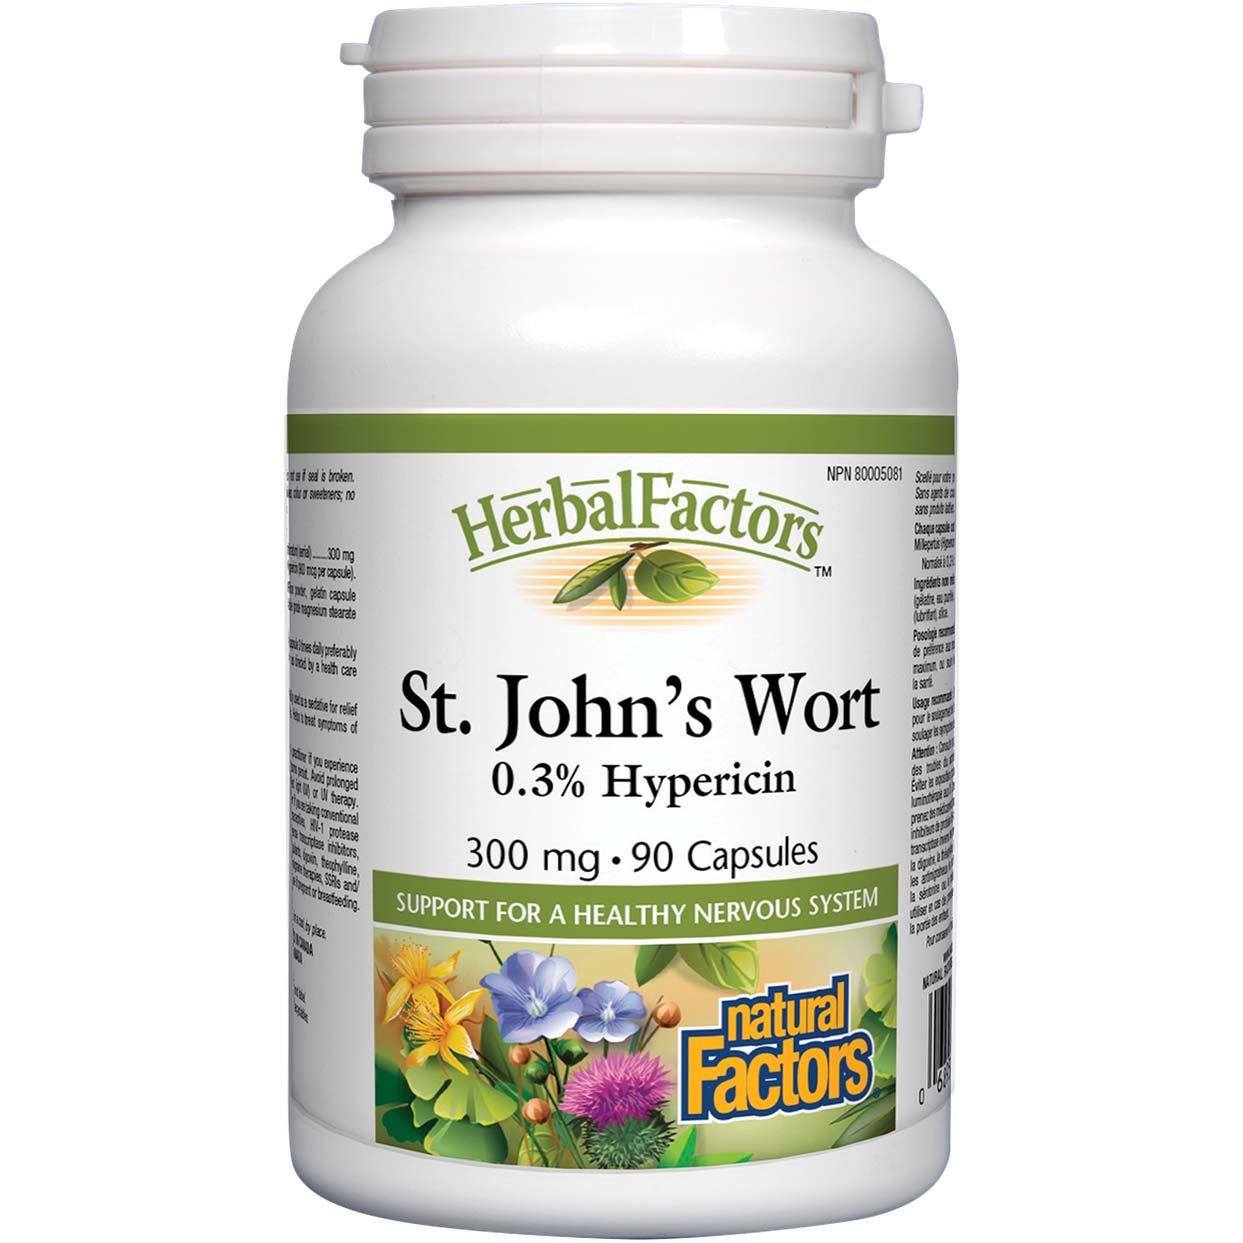 Natural Factors St. John's Wort 90 Capsules 300 mg